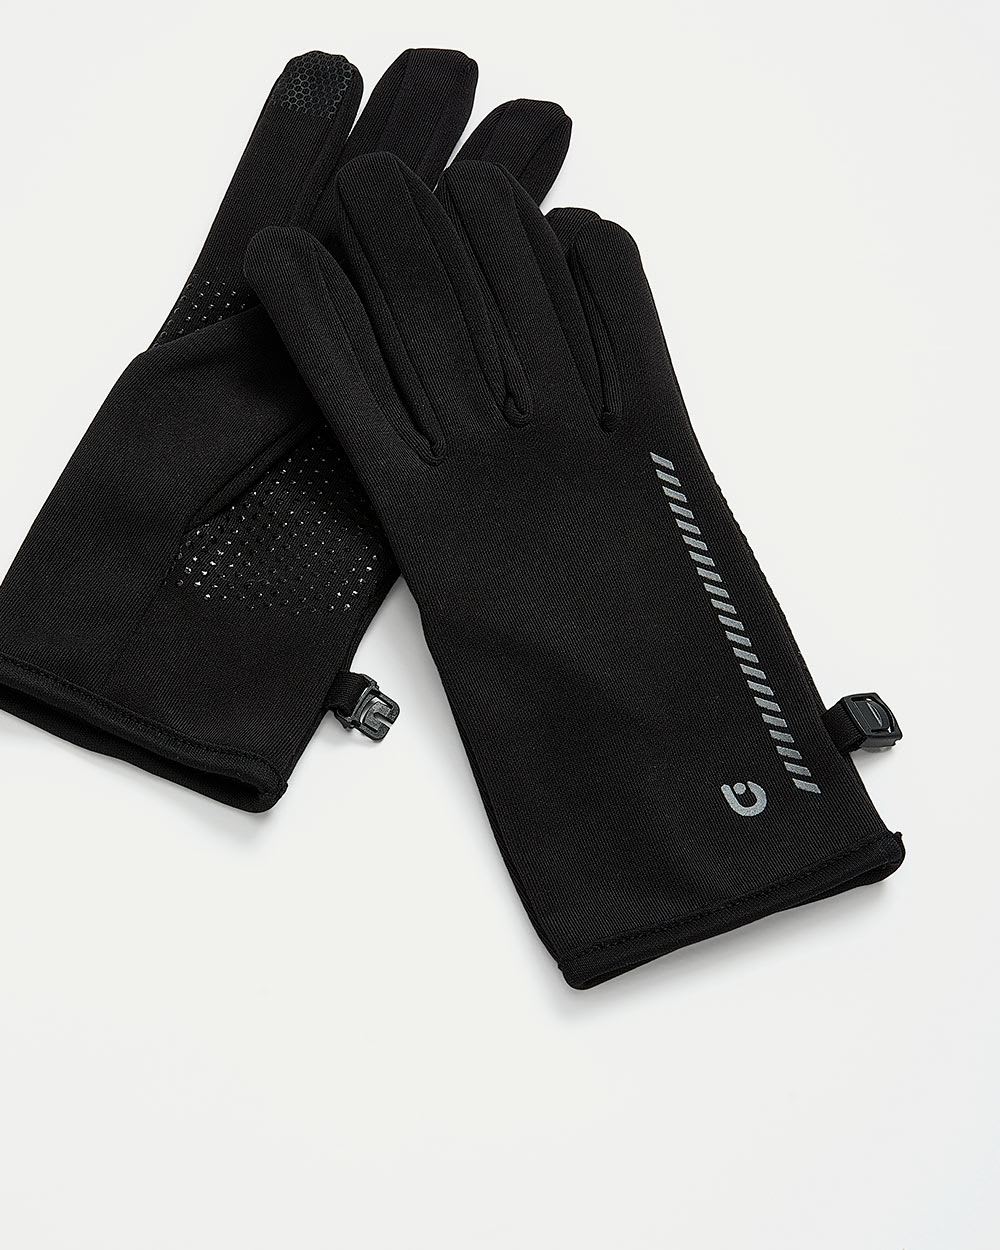 Tech Gloves - Hyba